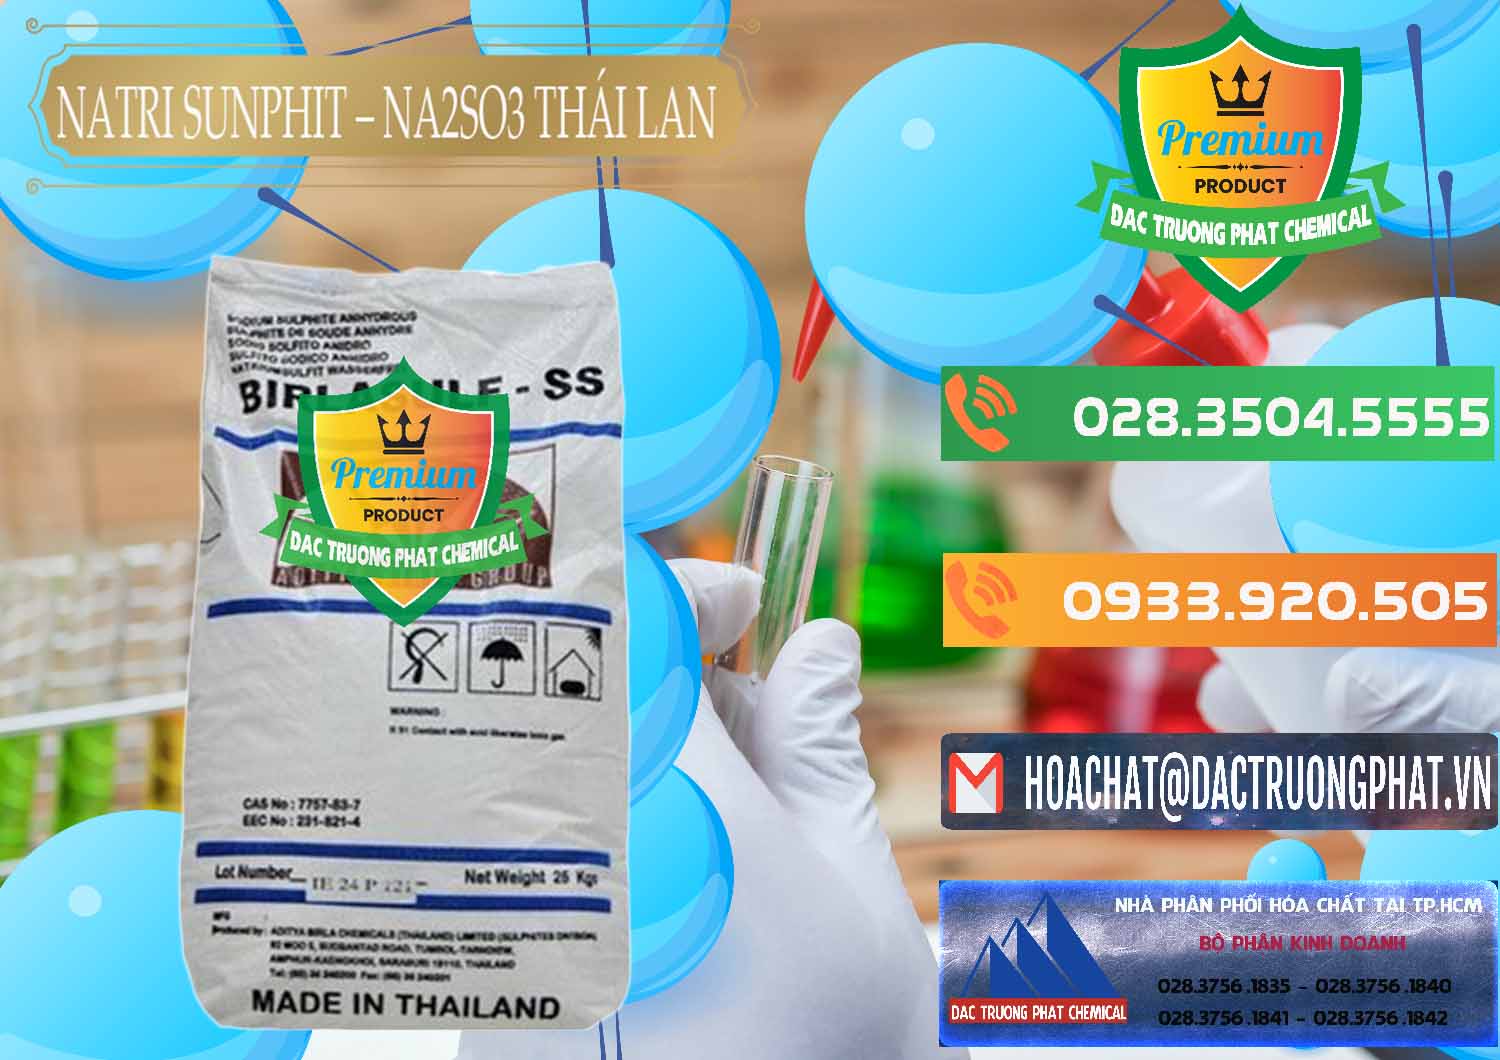 Đơn vị chuyên bán _ cung cấp Natri Sunphit - NA2SO3 Thái Lan - 0105 - Công ty kinh doanh & cung cấp hóa chất tại TP.HCM - hoachatxulynuoc.com.vn